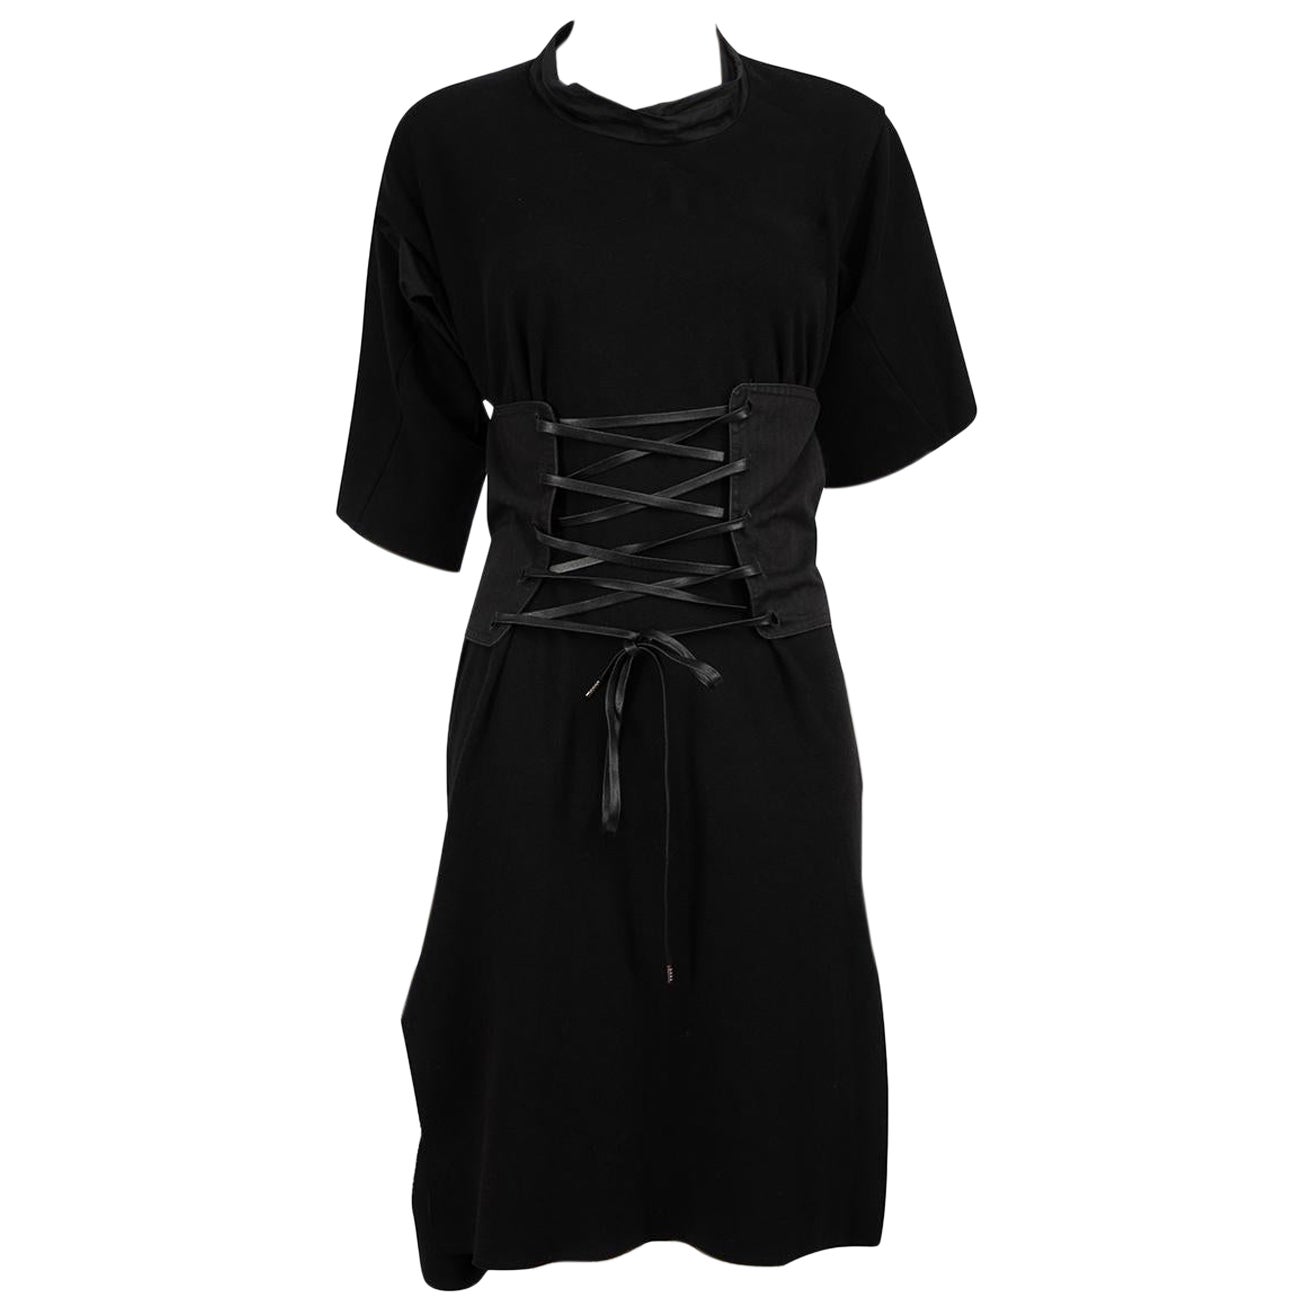 Robe t-shirt corset noire Vivienne Westwood Vivienne West Wood Anglomania XS  en vente